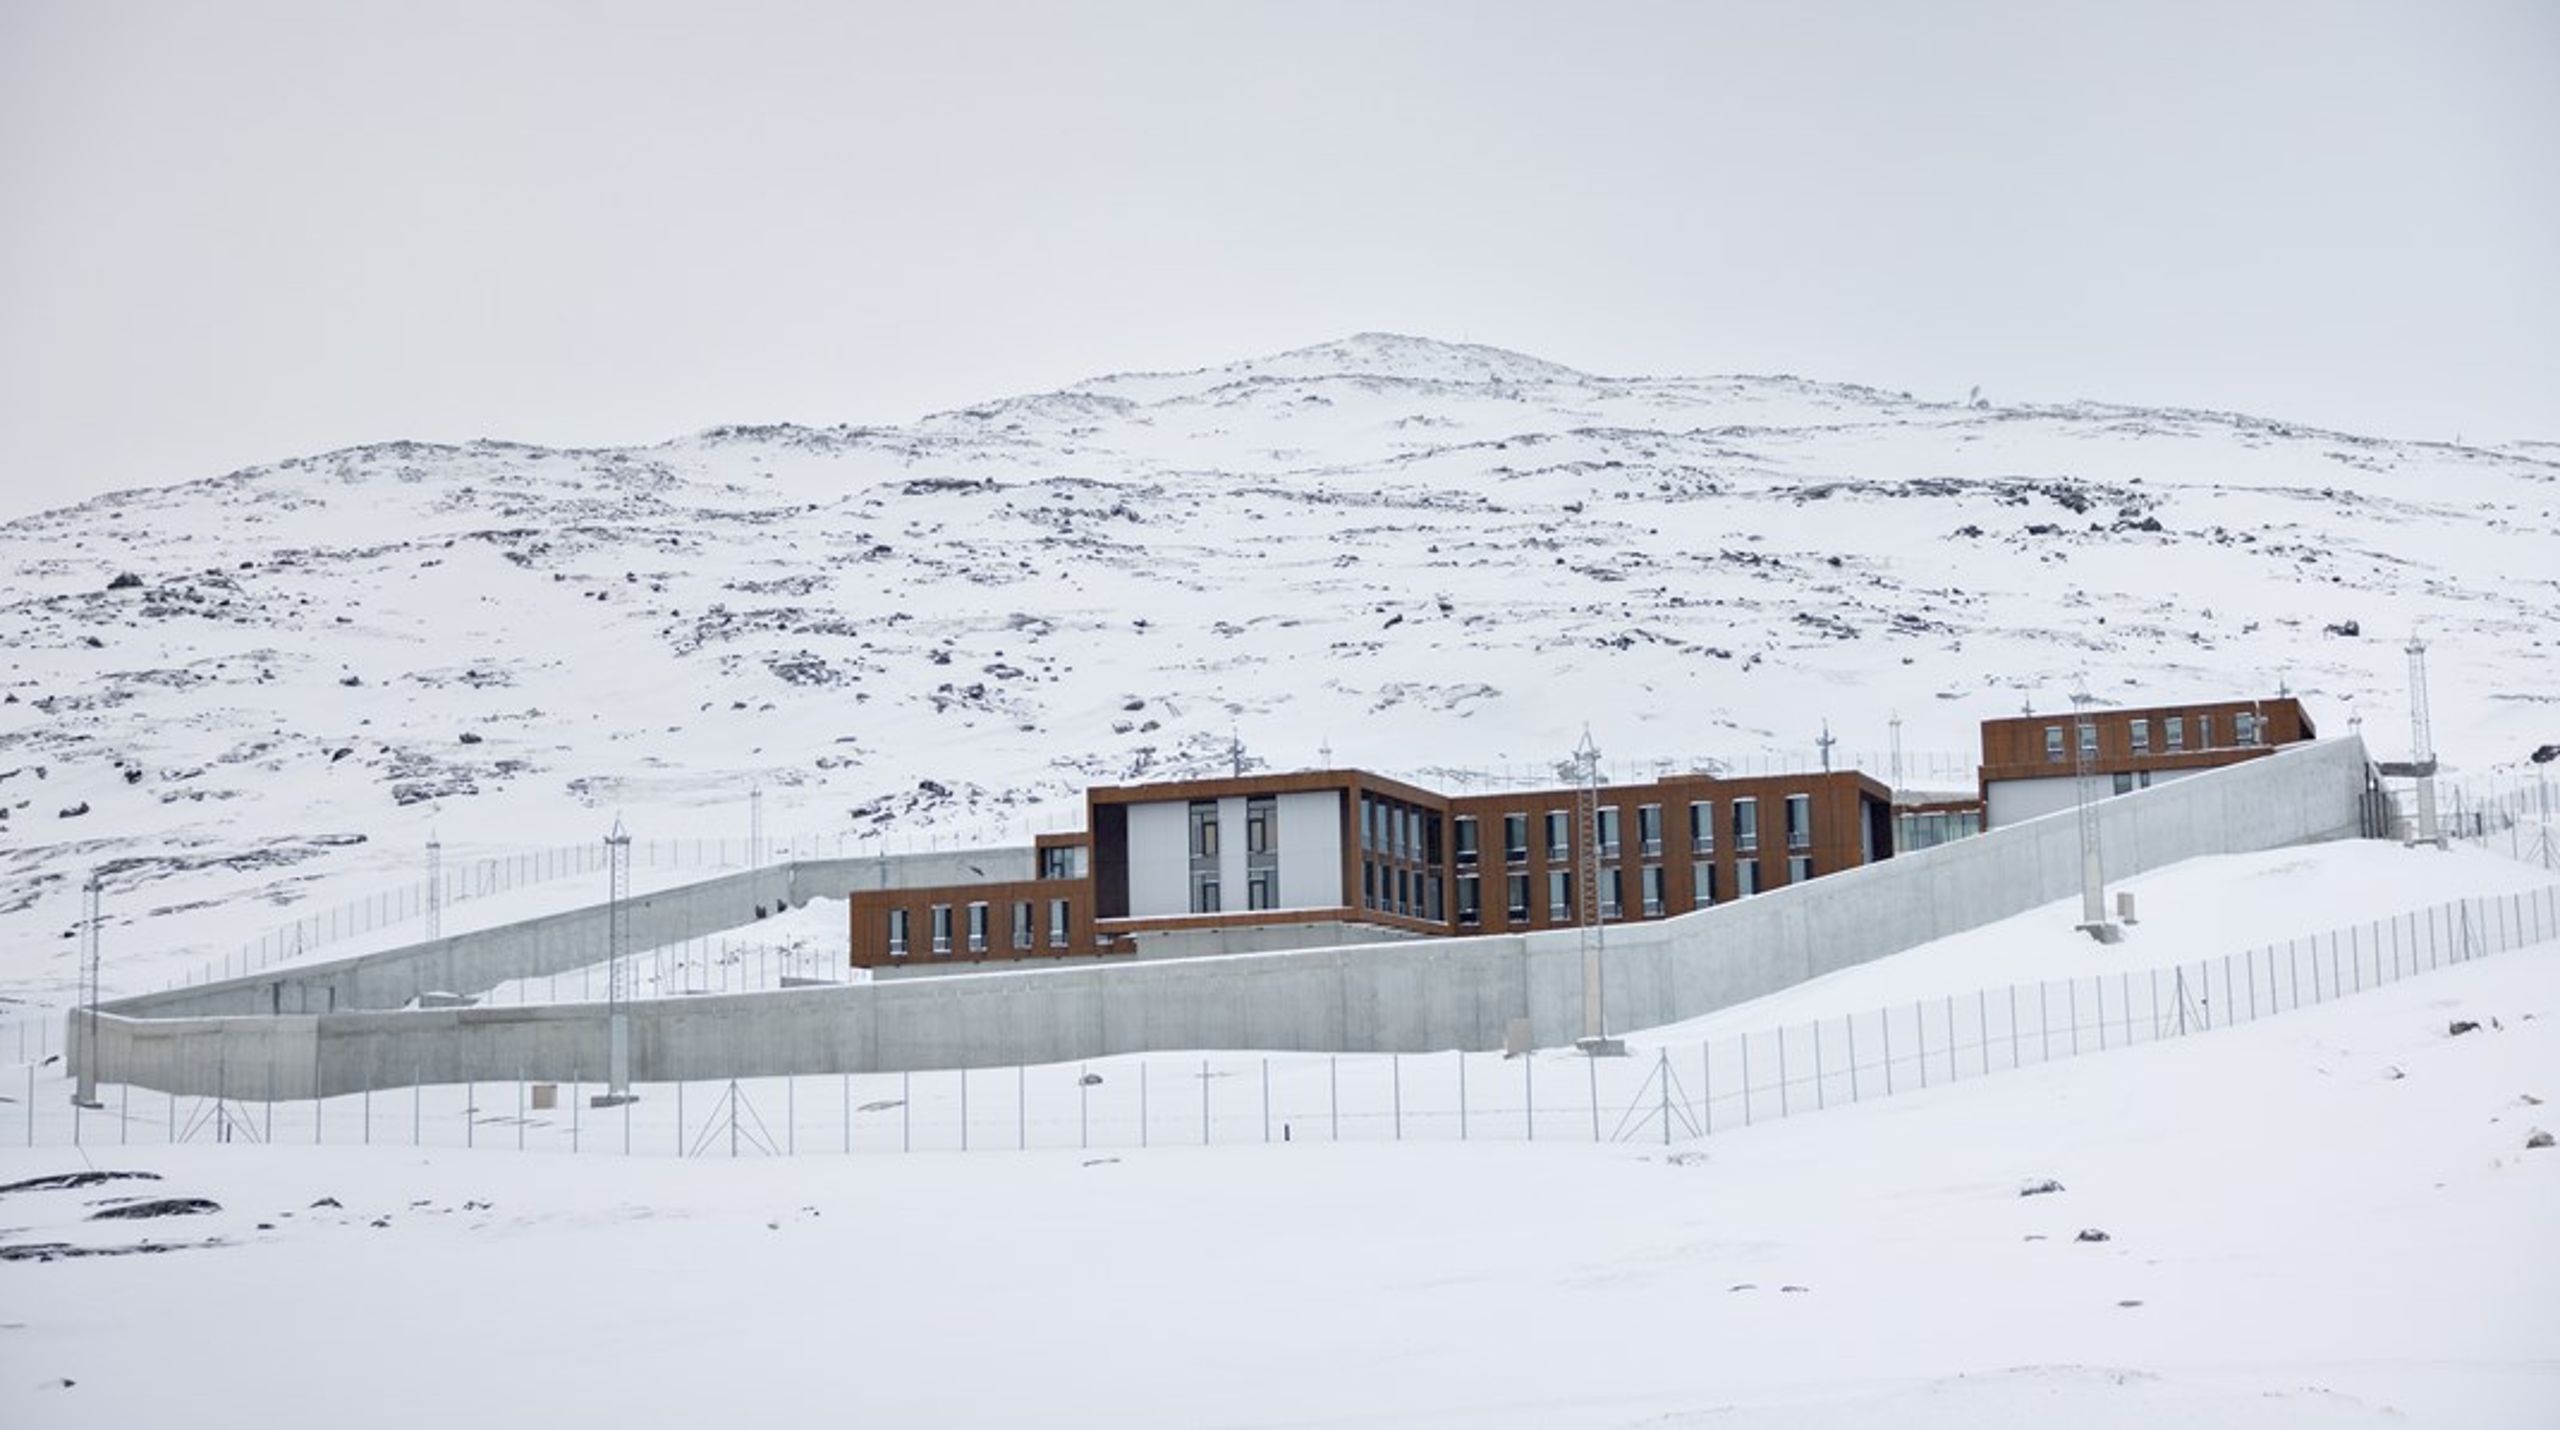 I 2019 fik Grønland sin første lukkede afdeling, da en ny anstalt i Nuuk åbnede.